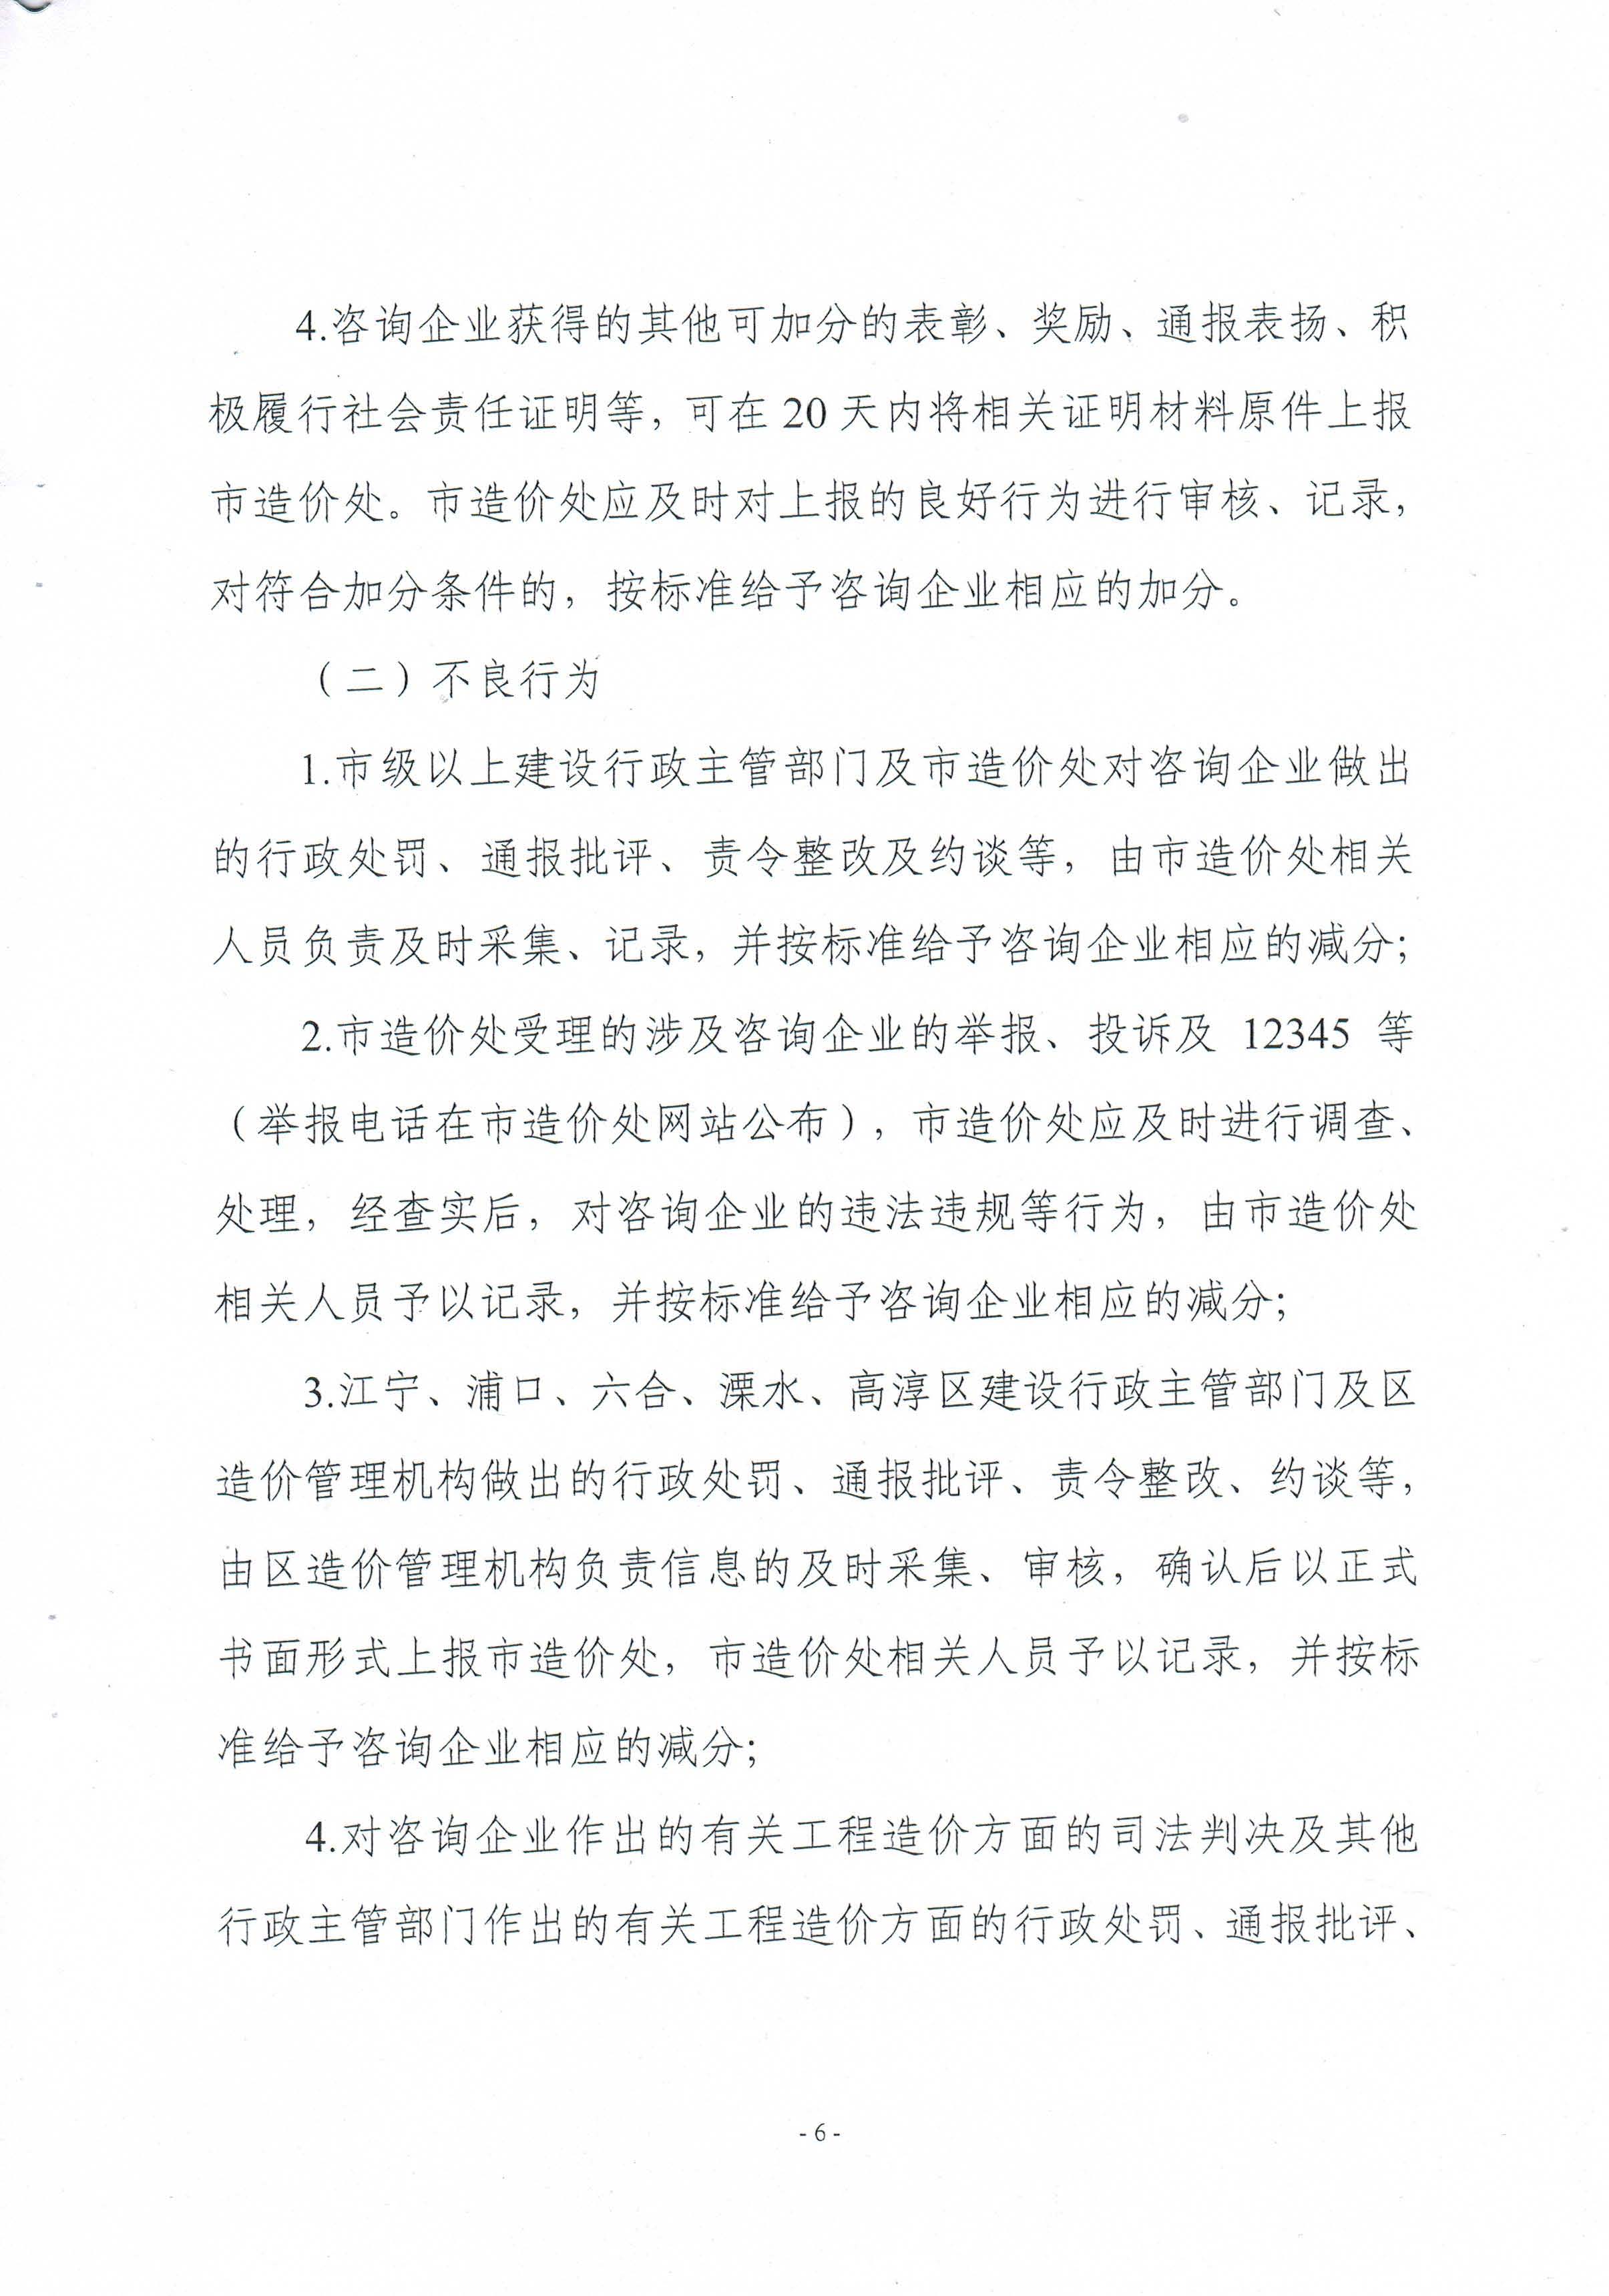 关于印发《南京市工程造价咨询企业信用管理暂行办法》的通知